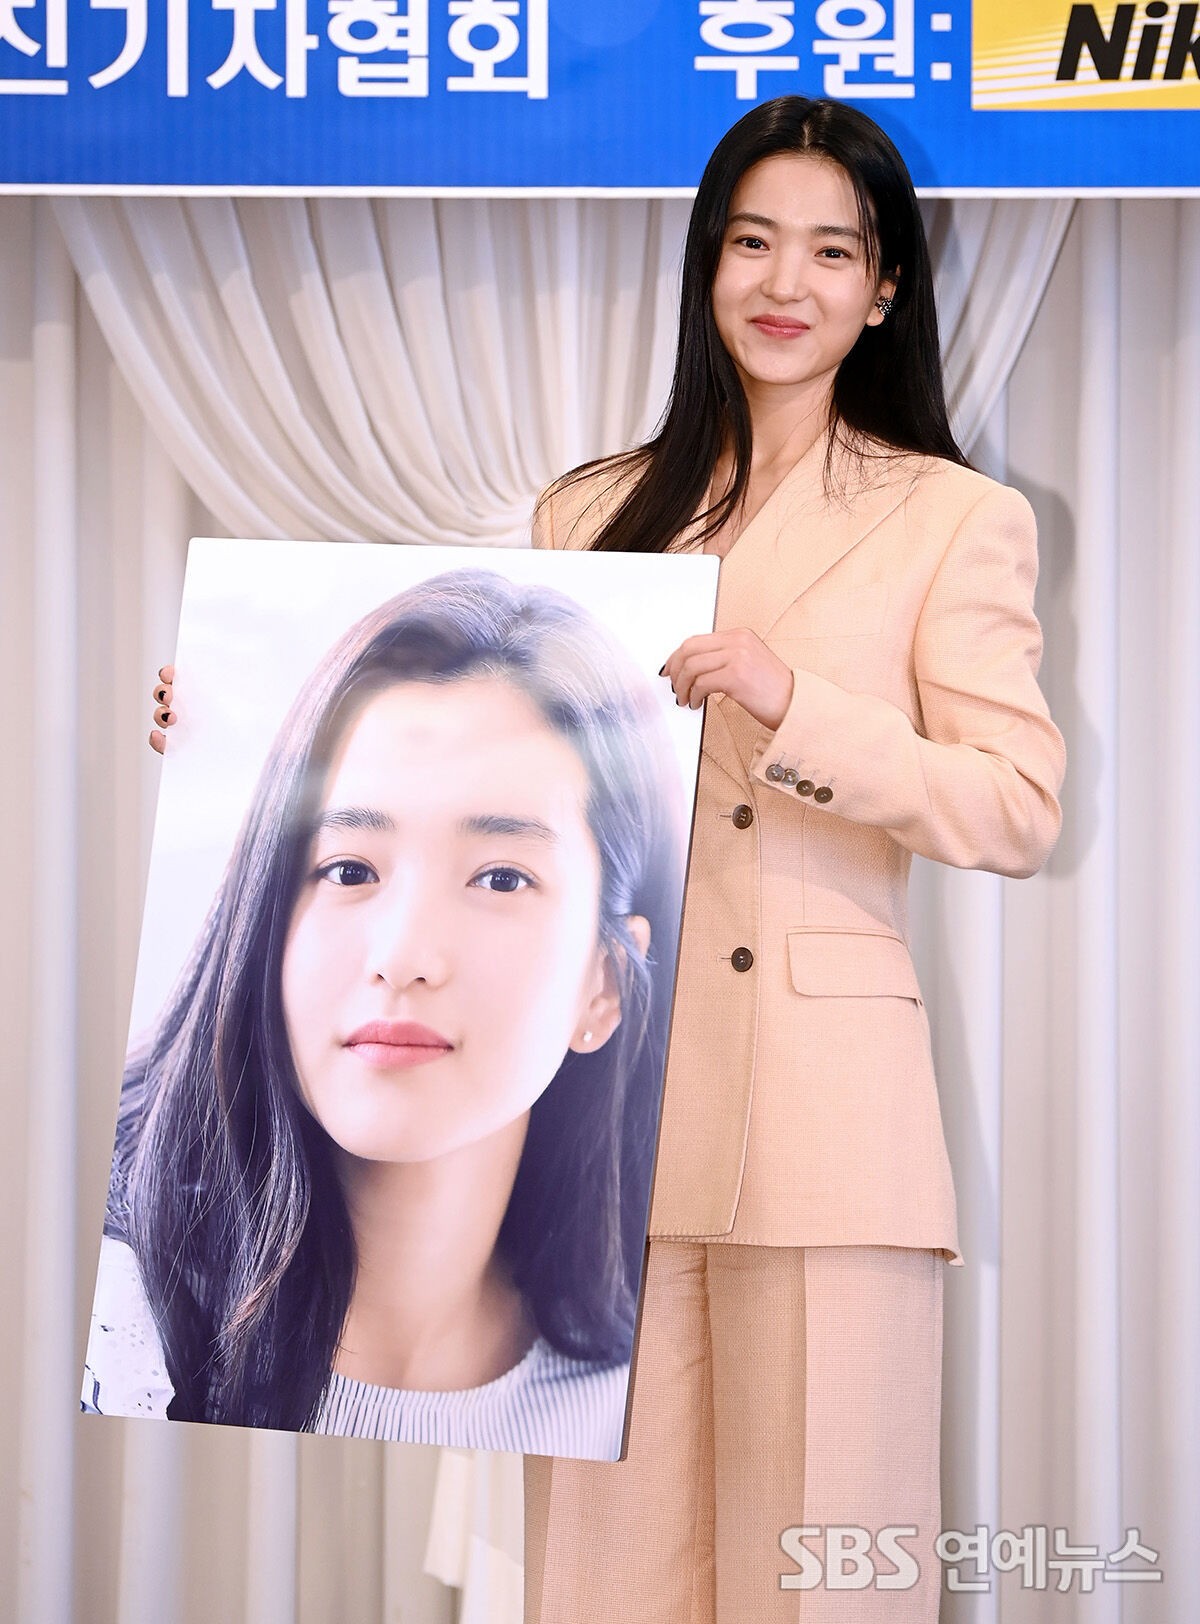 Diễn viên Kim Tae Ri tham dự '2022 KOPA & Nikon Press Photo Awards' được tổ chức tại khách sạn Rivera, Gangnam-gu, Seoul vào sáng 19/9. Cô chụp ảnh kỷ niệm bên bức hình chân dung.